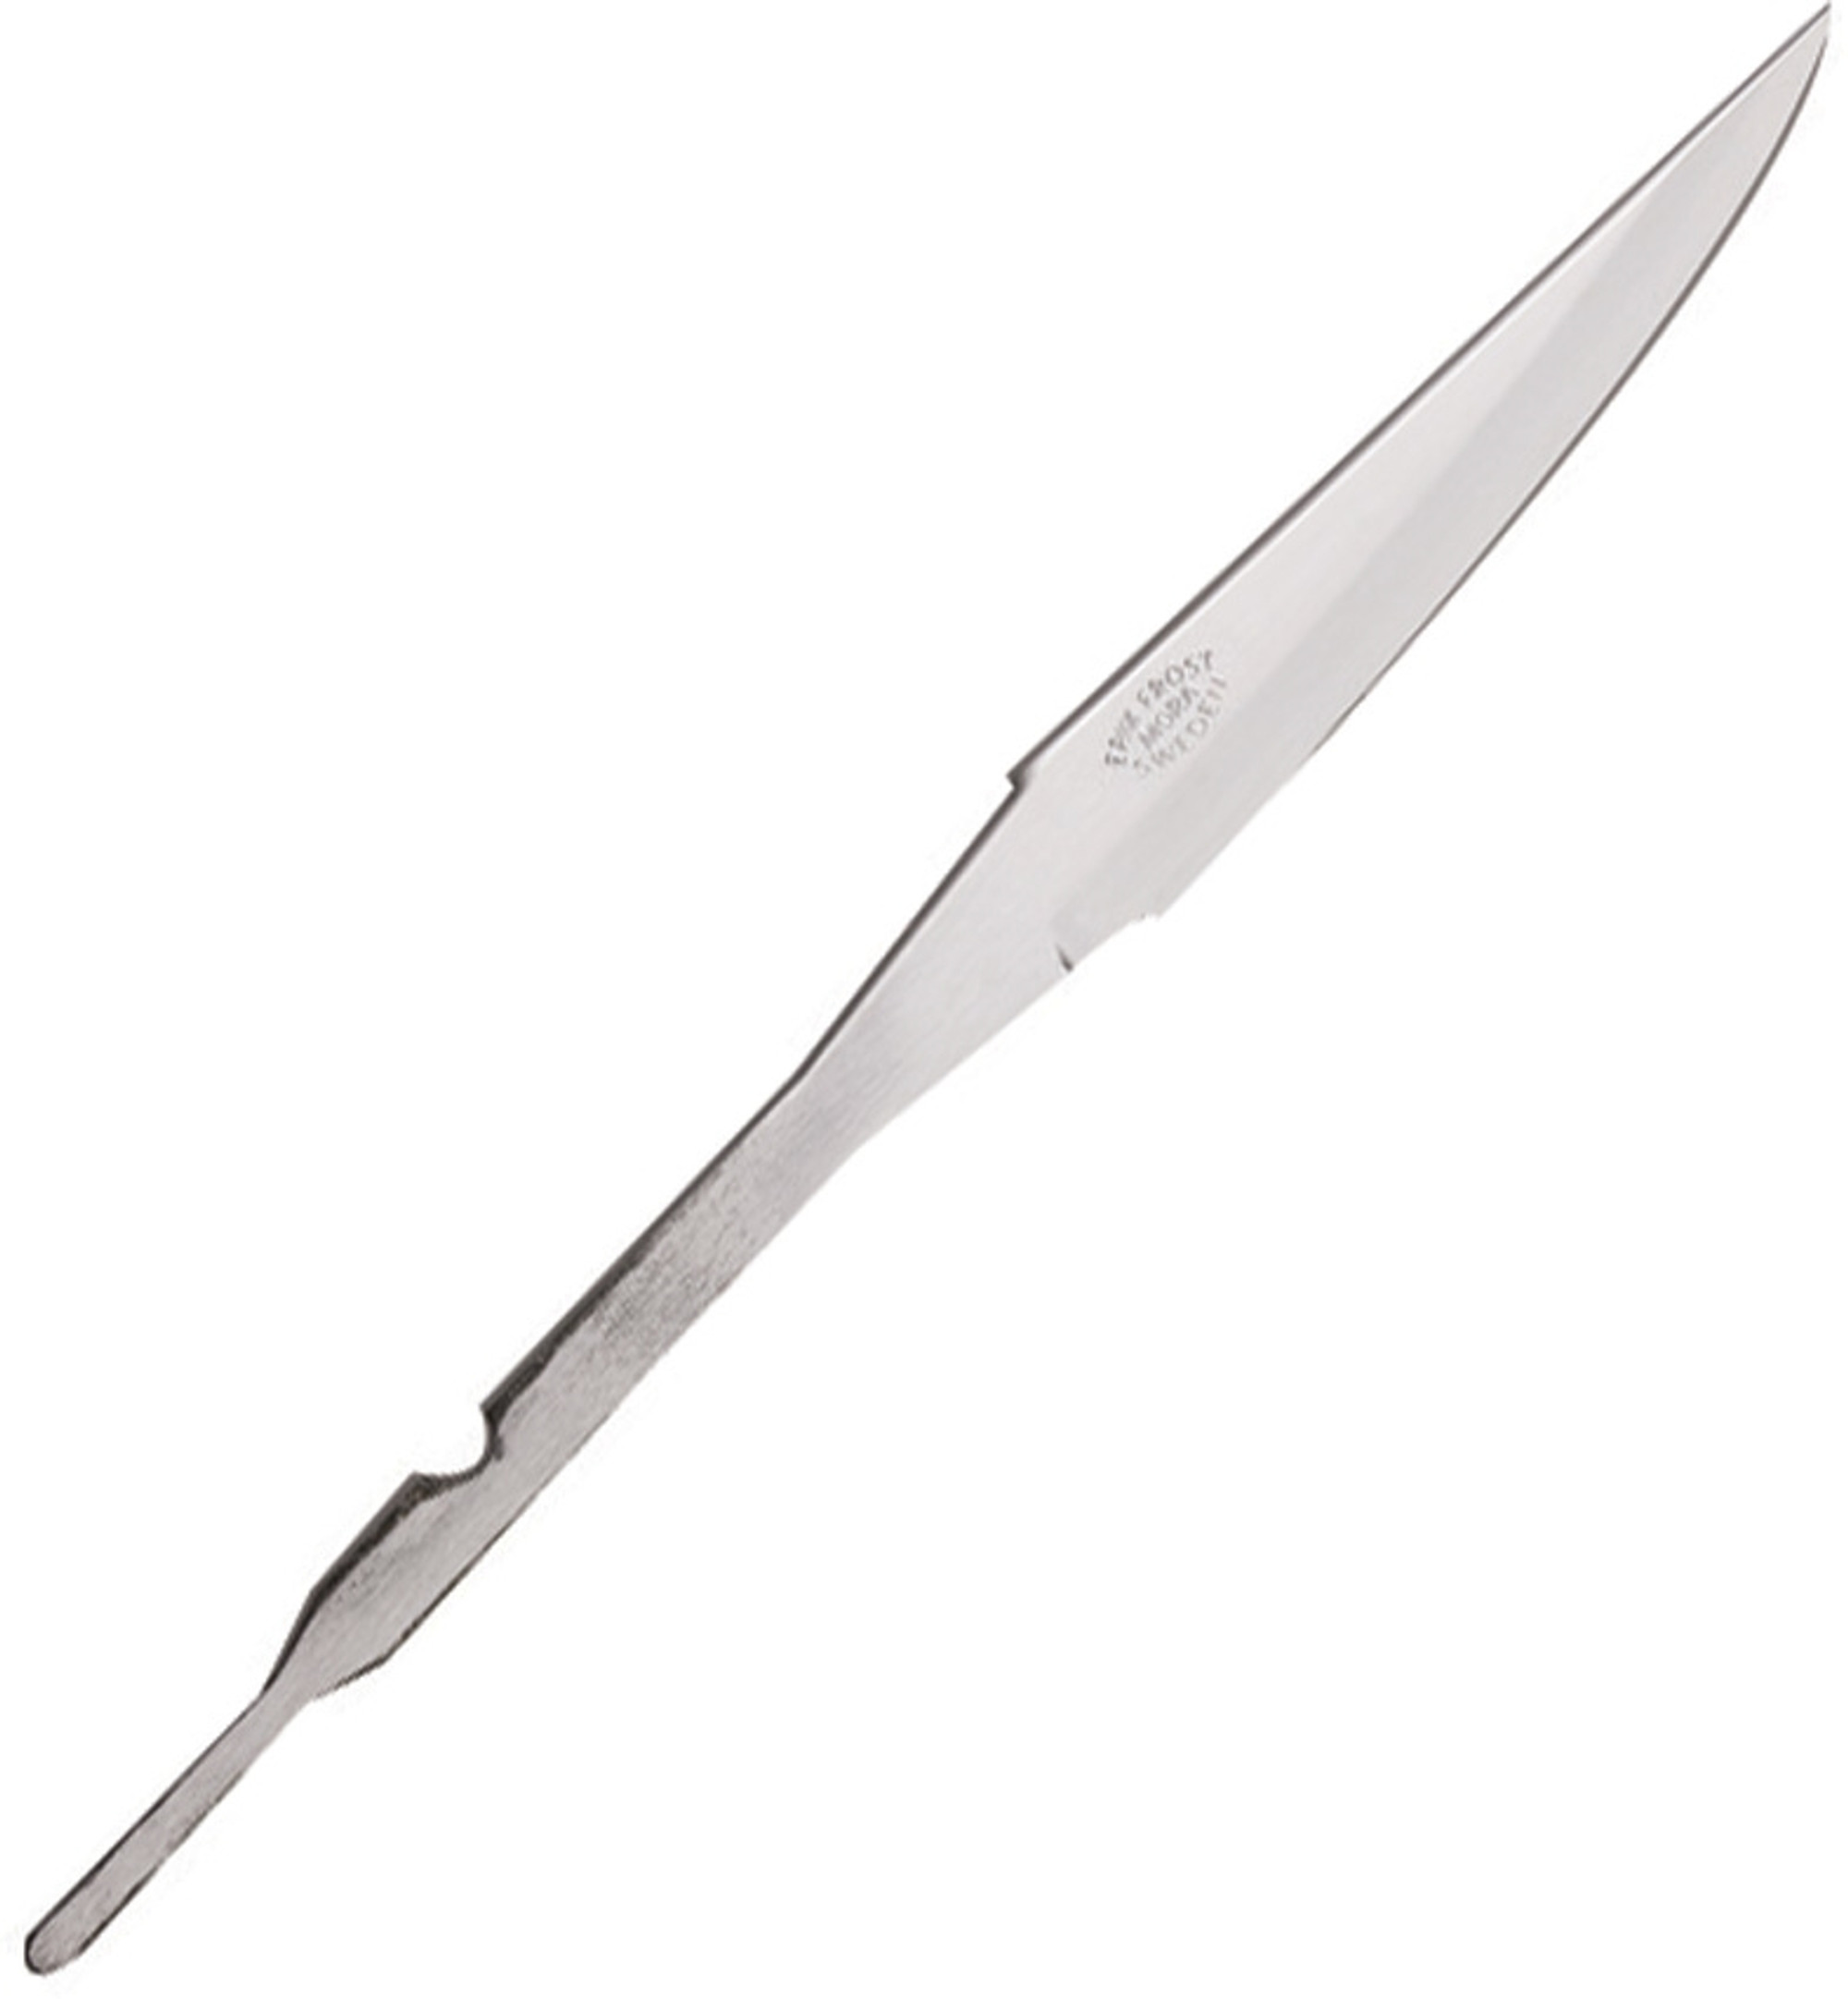 Knife Blade No. 106